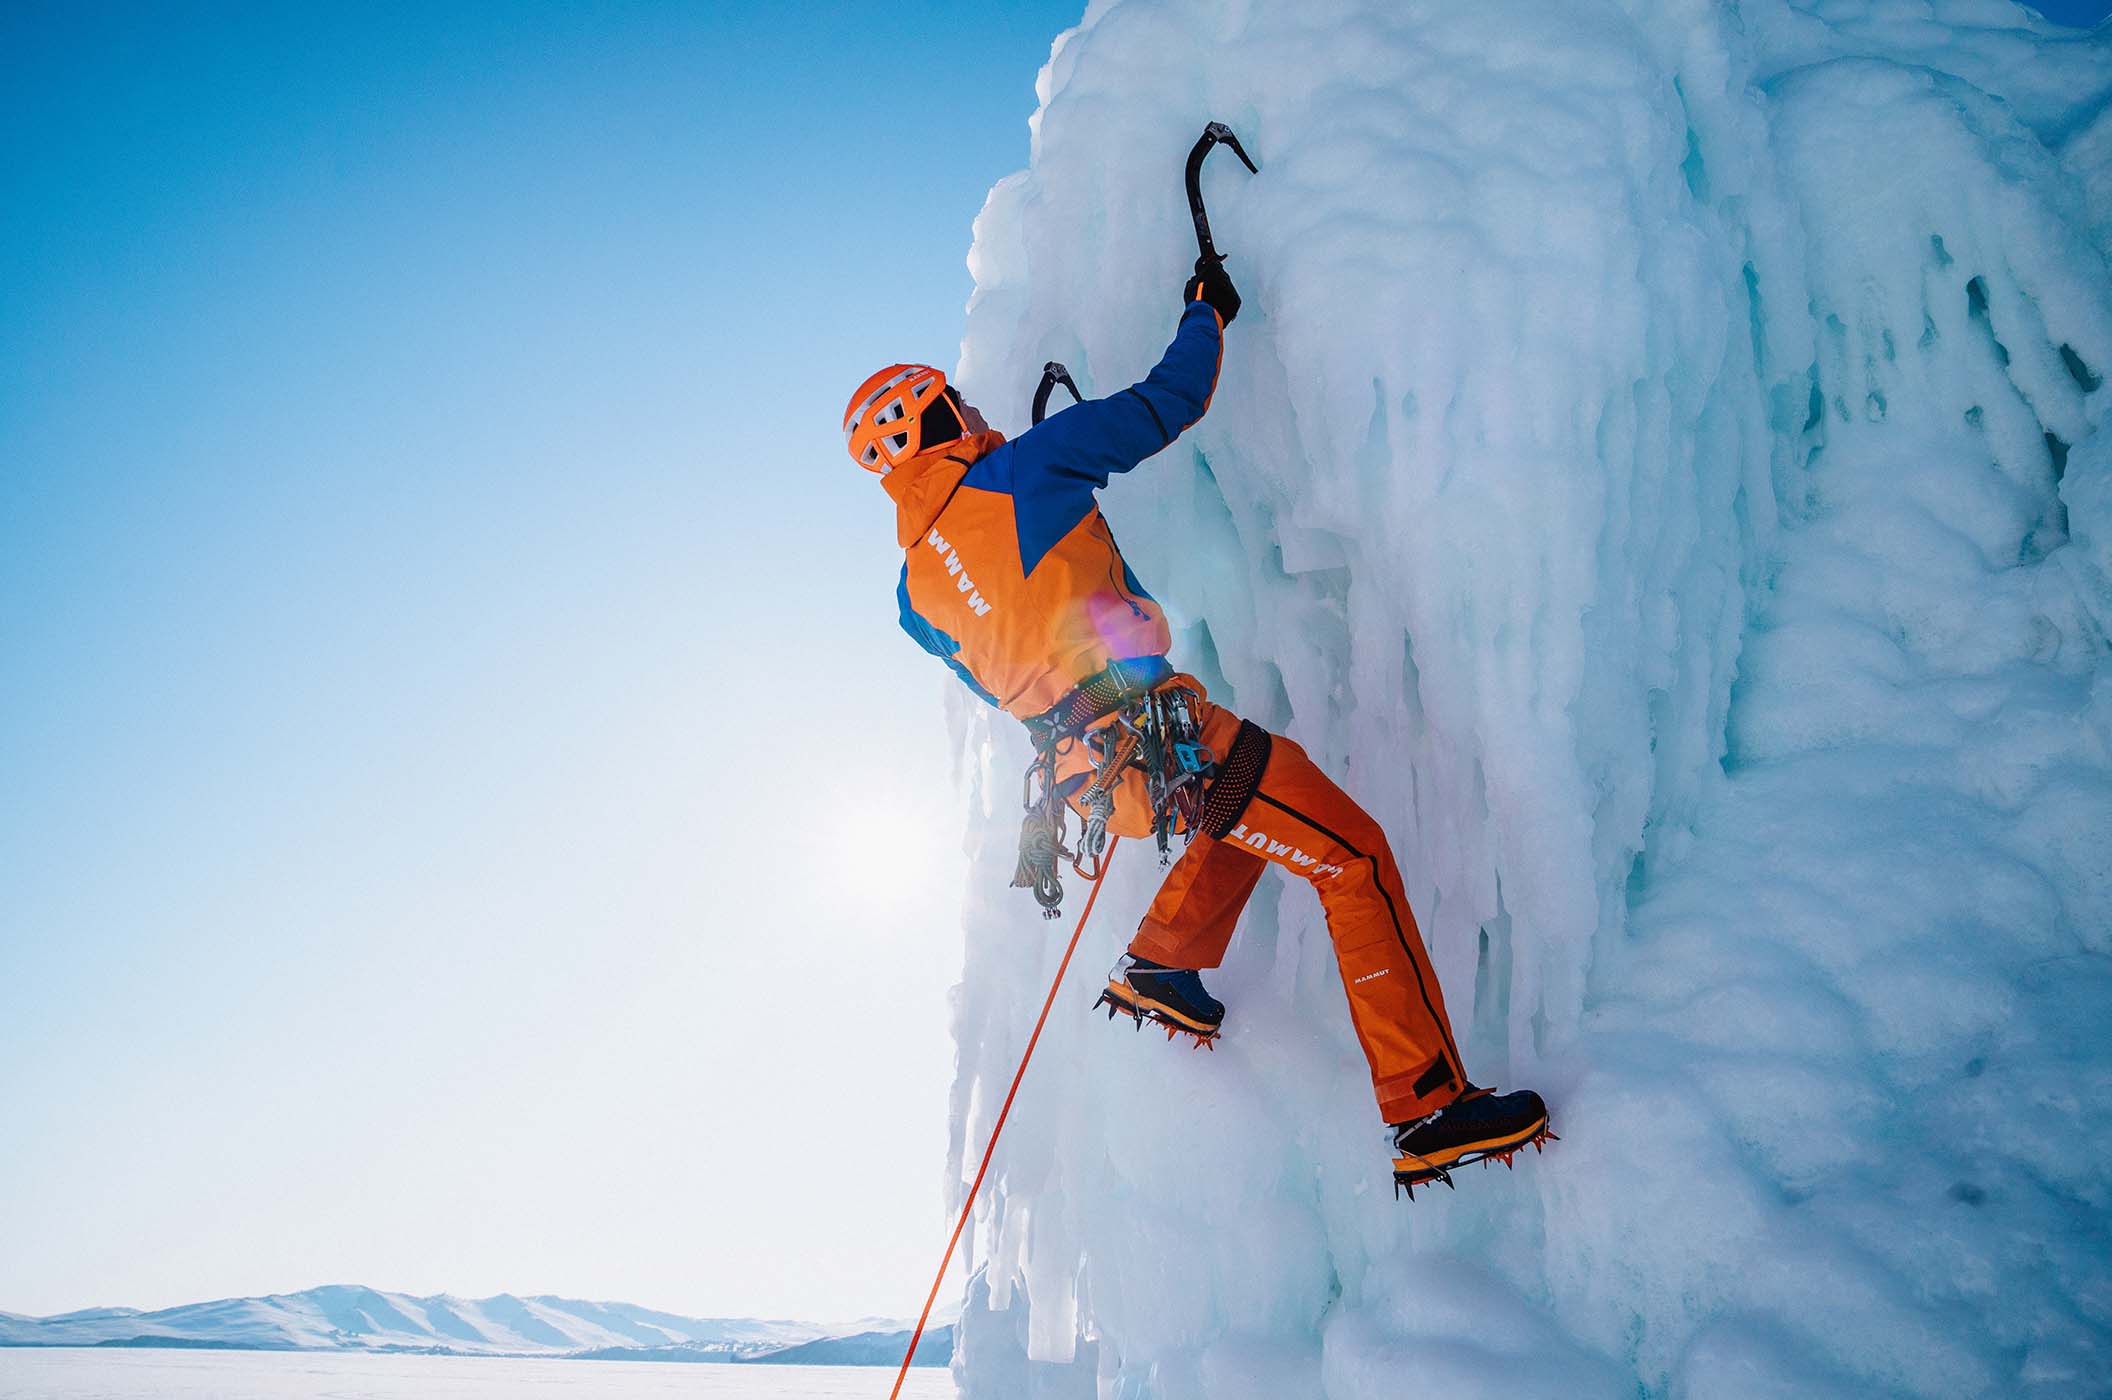 Mammut Eiger Extreme – Bergsportbekleidung und Ausrüstung für Profi-Outdoorsportler